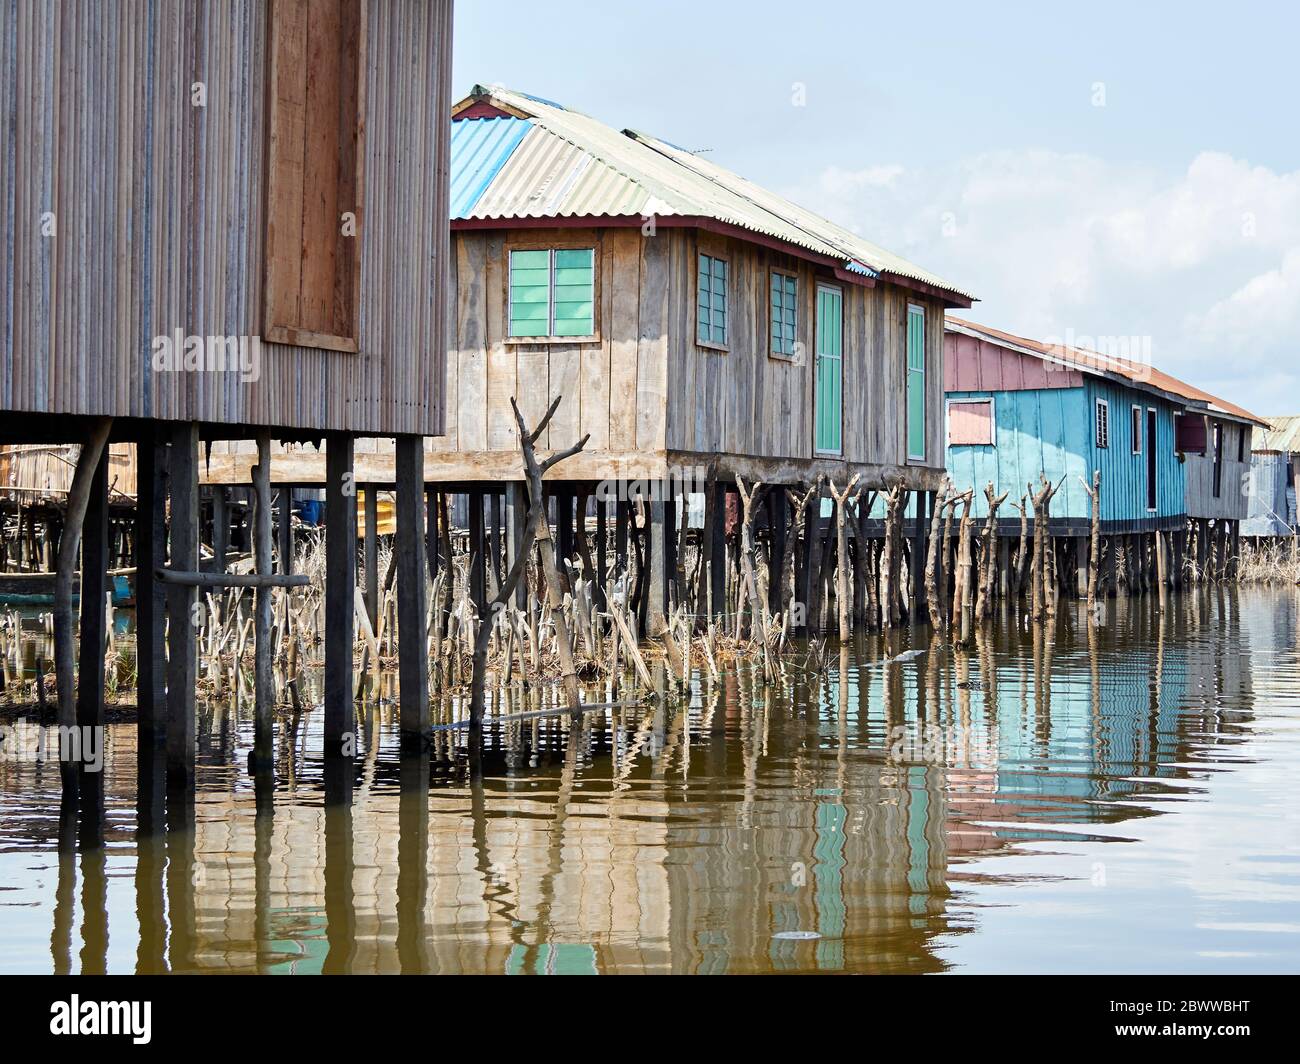 Benin, Atlantique Department, Ganvie, Stilt houses on shore of Lake Nokoue Stock Photo